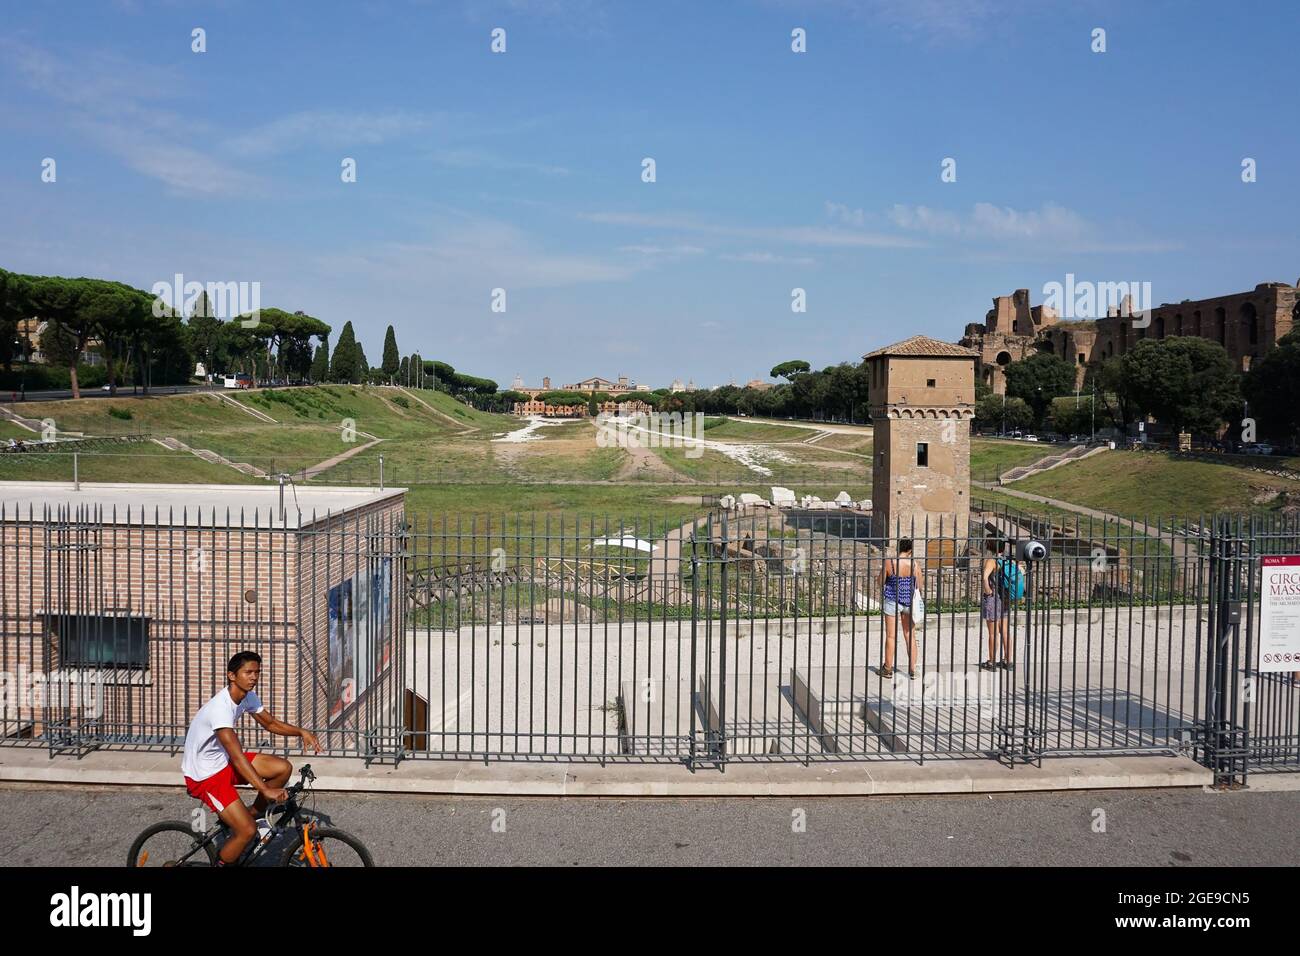 ROME, ITALIE - 01 septembre 2019 : un ancien stade de course de chars romain « Circus Maximus » à Rome, Italie Banque D'Images